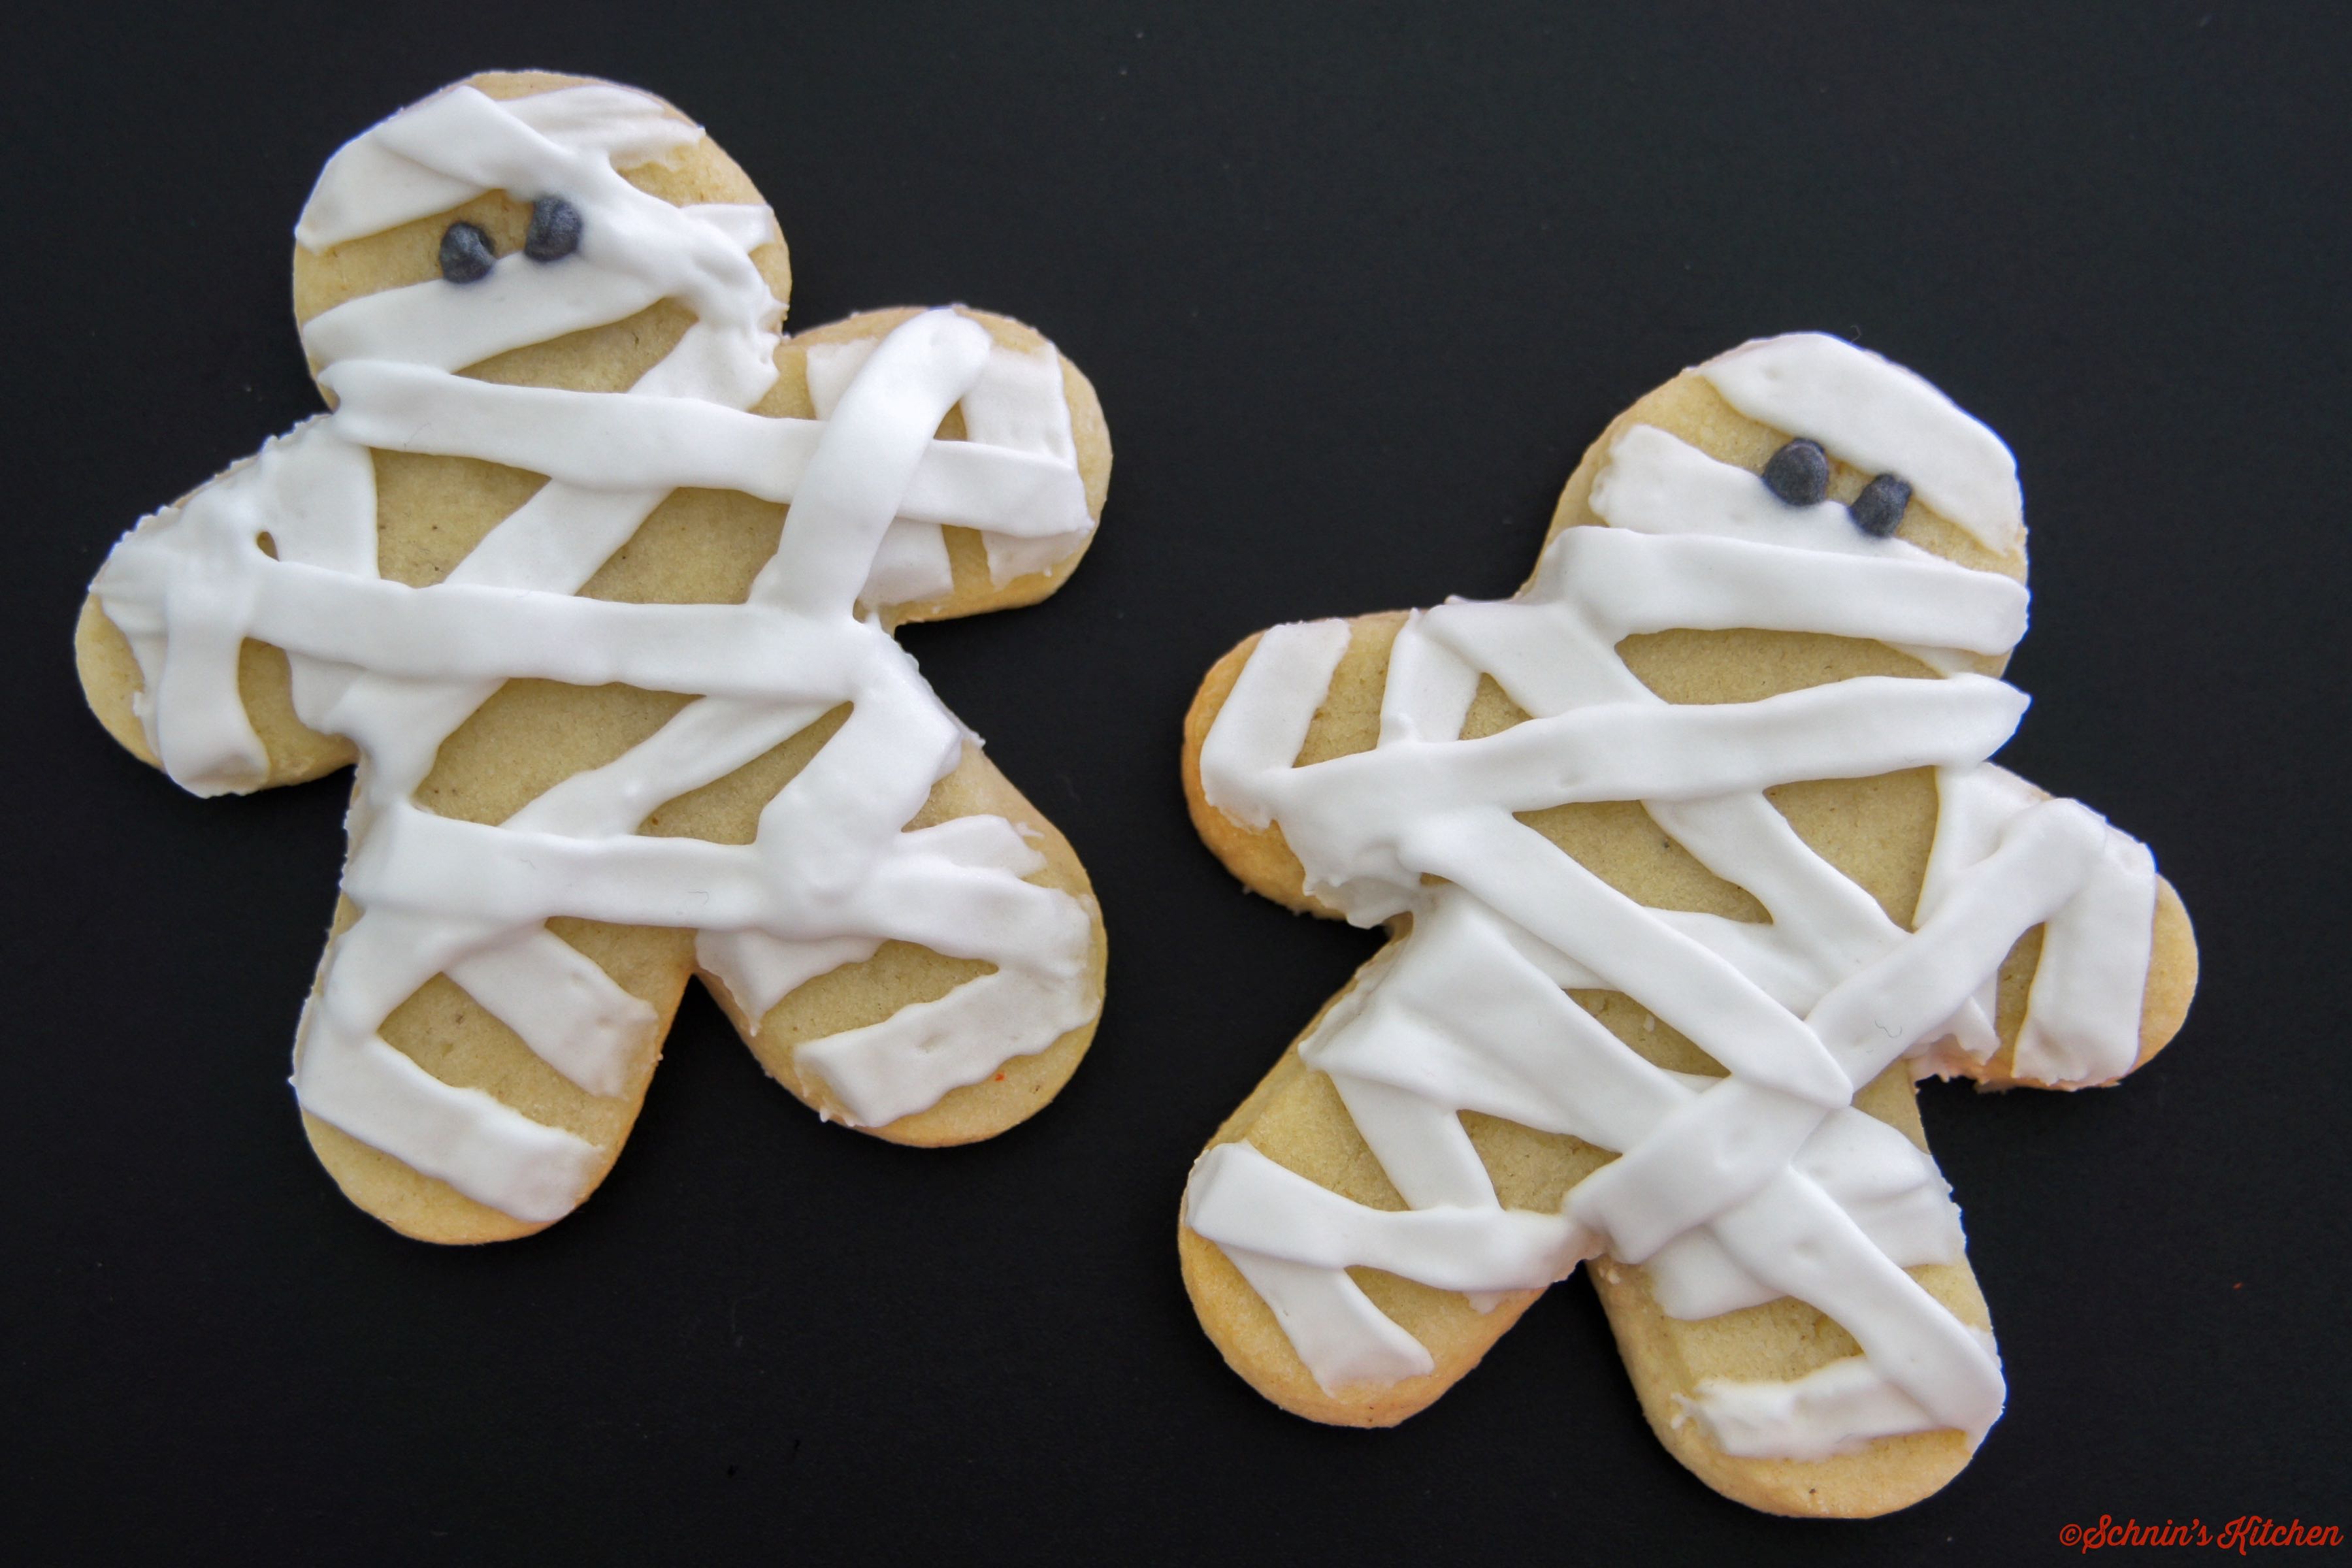 Gruselig-schöne Mumien-Cookies für Halloween mit Royal Icing Glasur - www.schninskitchen.de